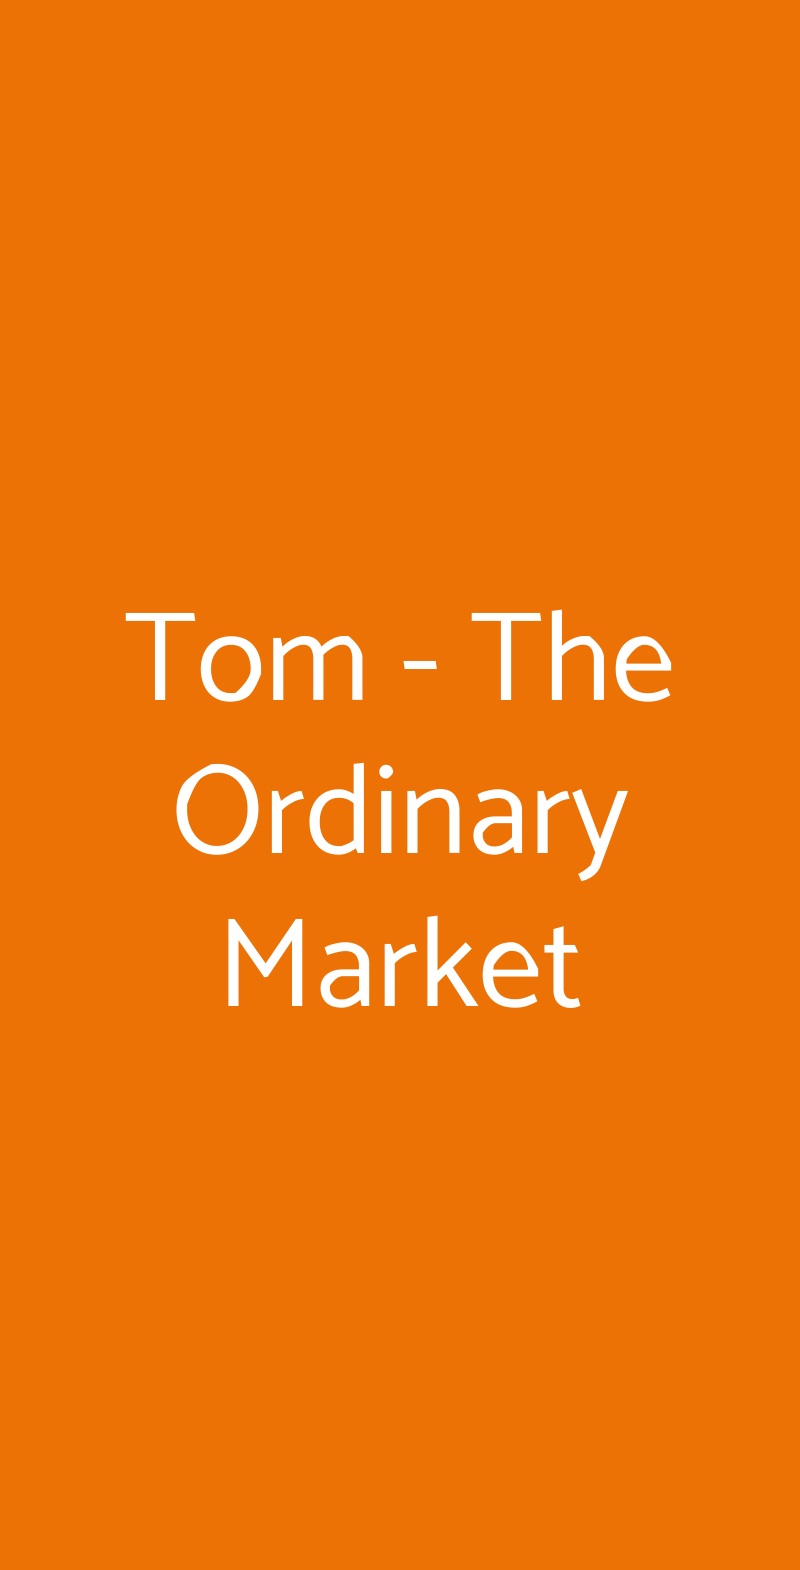 Tom - The Ordinary Market Milano menù 1 pagina